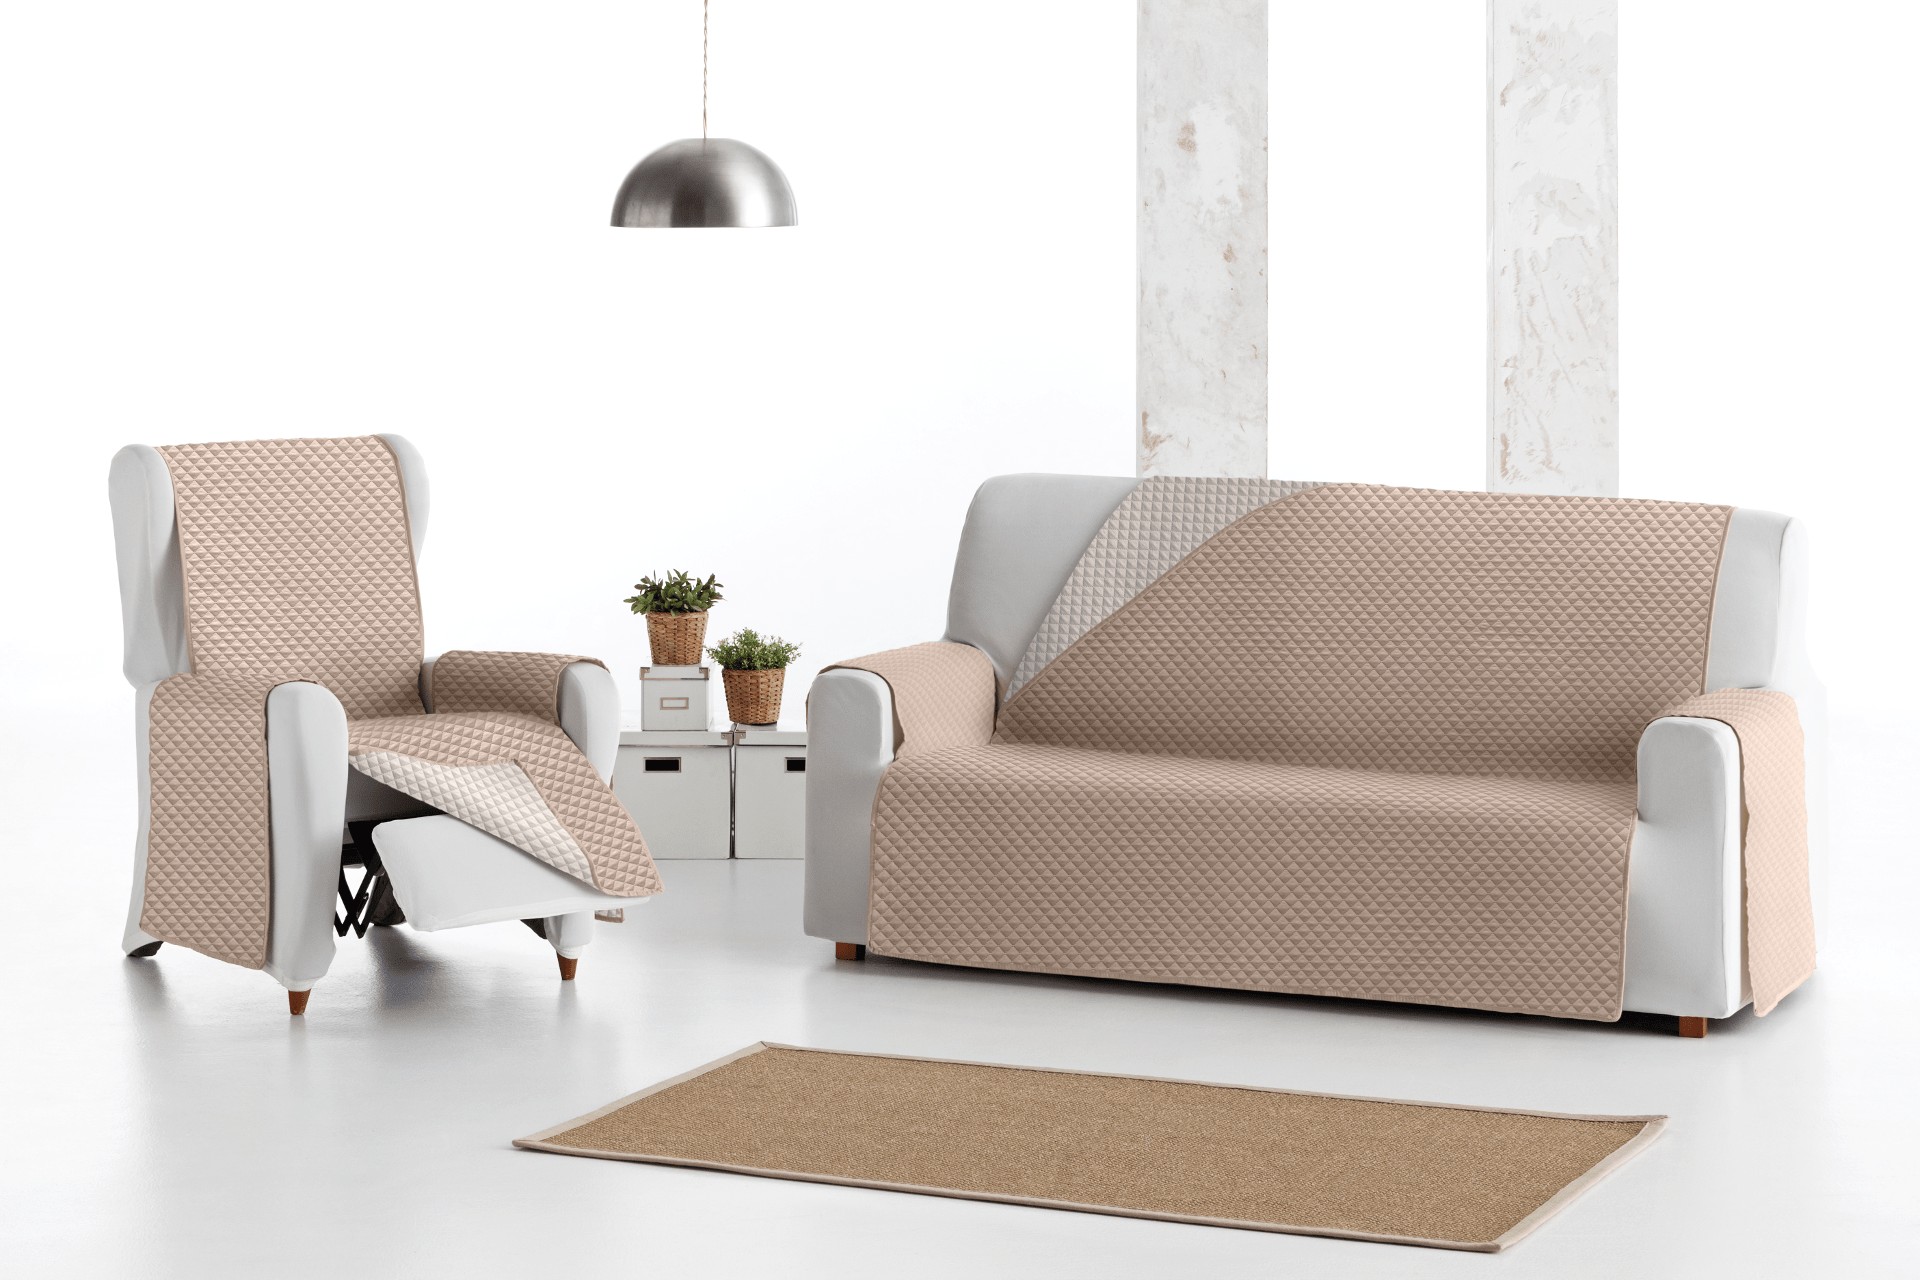 Funda de Sofa elastica de 4 Plazas, funda de licra adaptable para sofa 4  plazas, funda cubresofa universal, elastica adaptable.